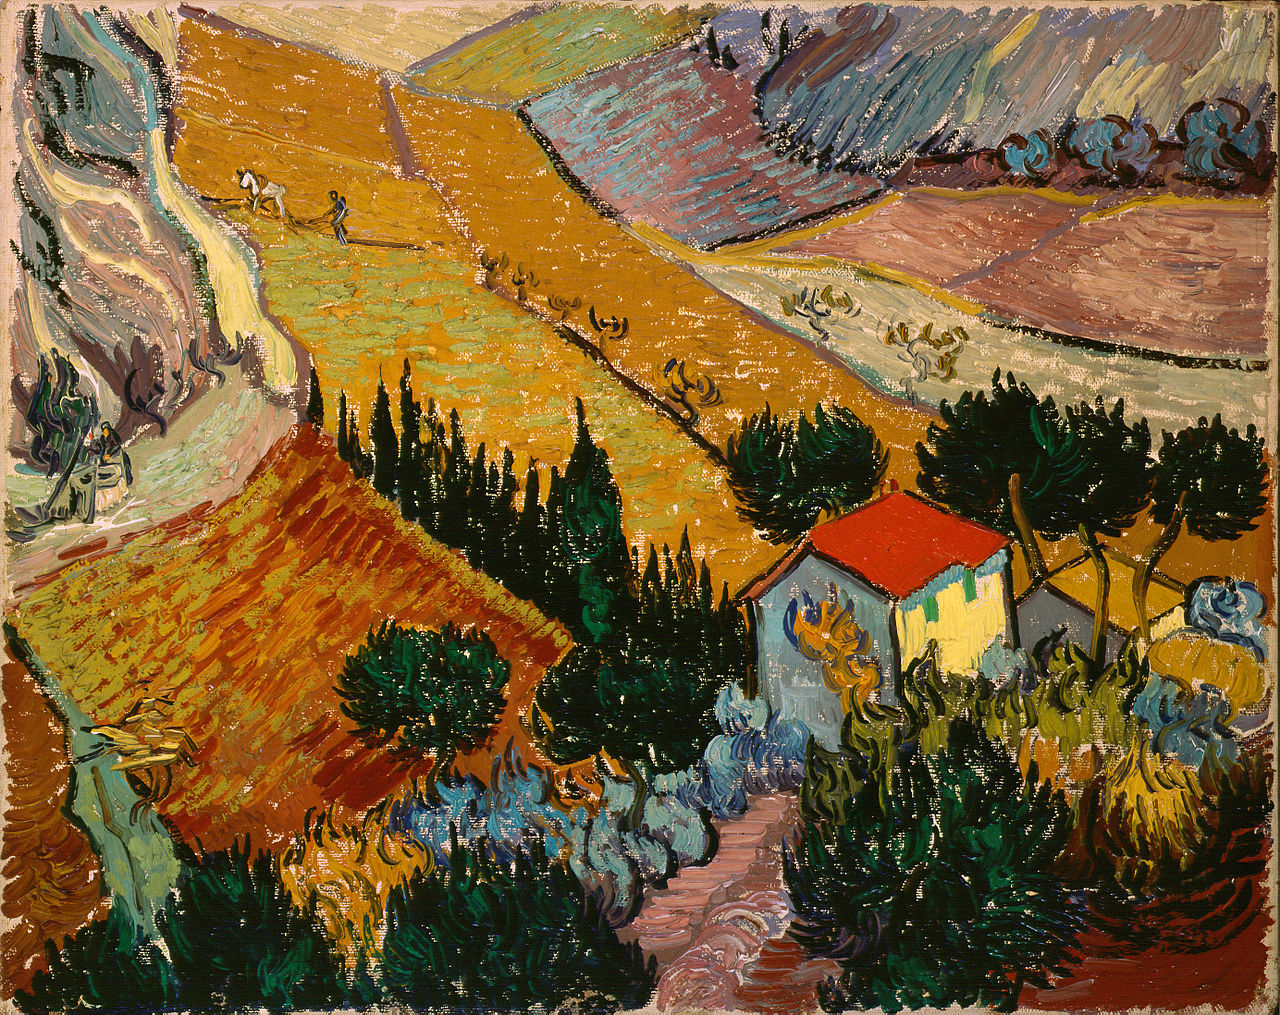 有房子和農夫的風景 by Vincent van Gogh - 1889 - 33 x 41.4 厘米 